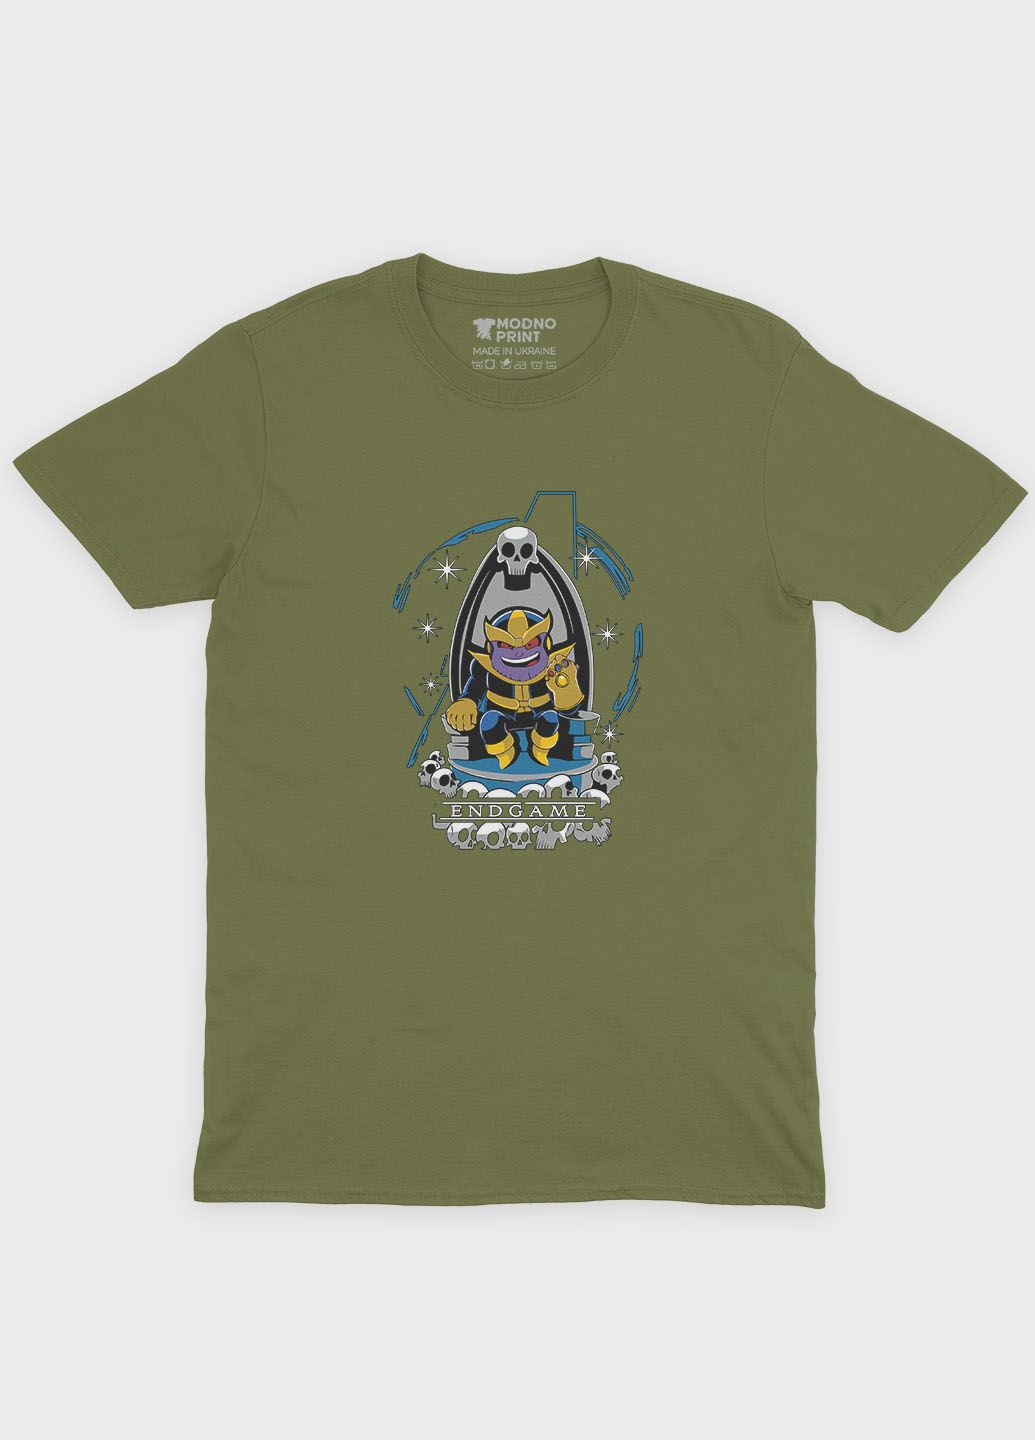 Хаки (оливковая) мужская футболка с принтом супезлоды - танос (ts001-1-hgr-006-019-005) Modno